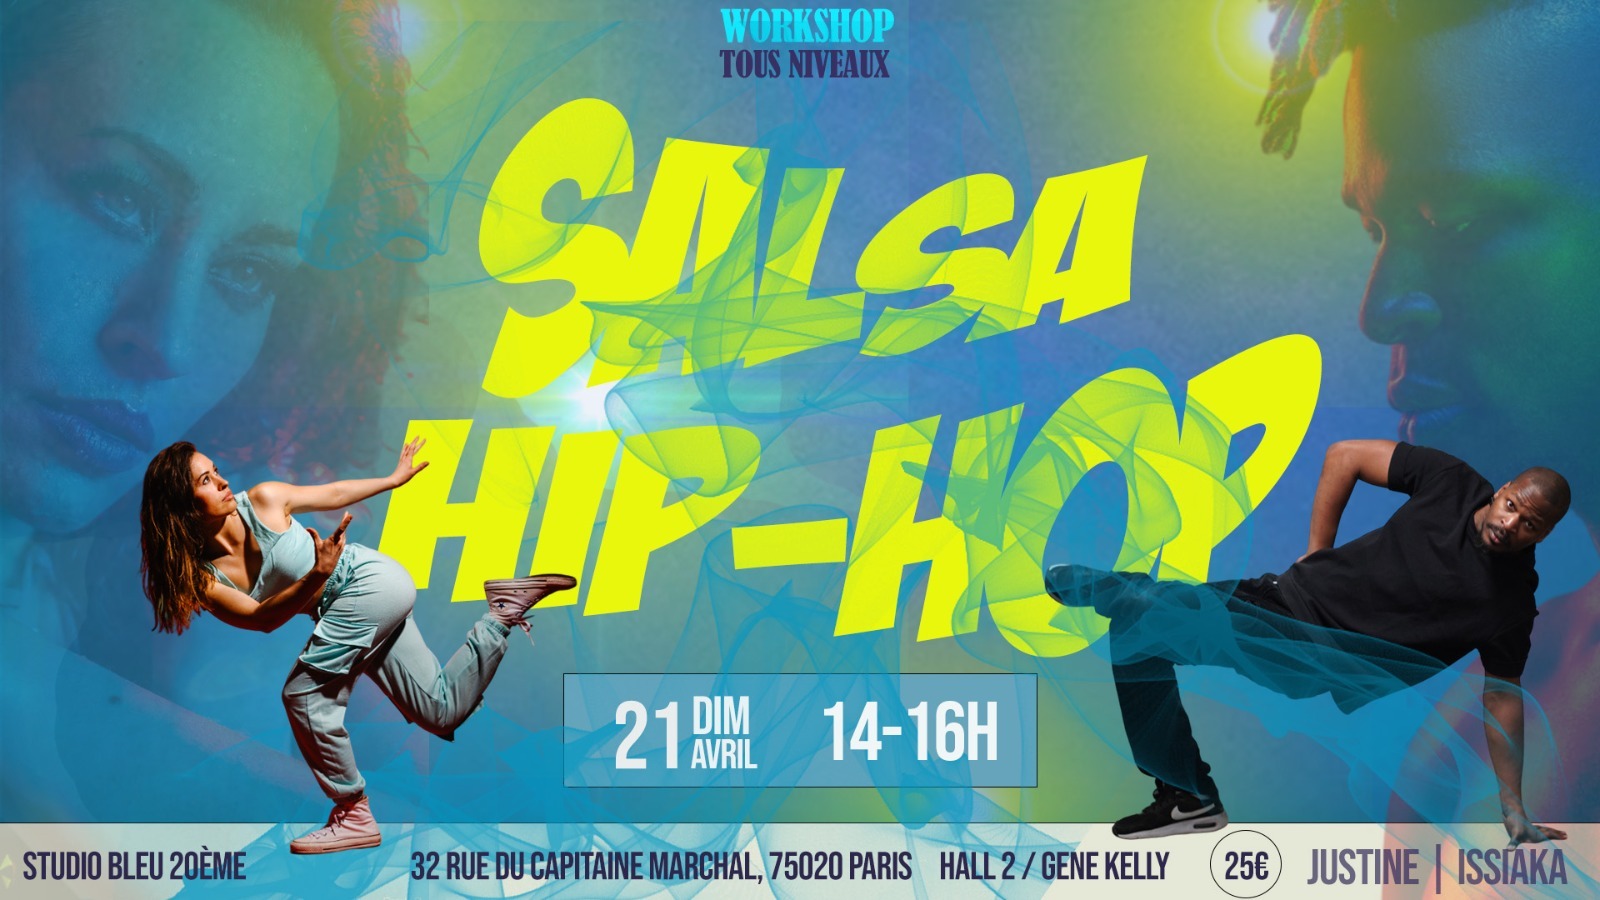 paris salsa hip hop battle, xtremambo, rodrigue lino, centquatre paris, salsa hip hop, centquatre, 104, danse, salsa hip hop fusion, fusion, salsa, battle de danse, battle de salsa,